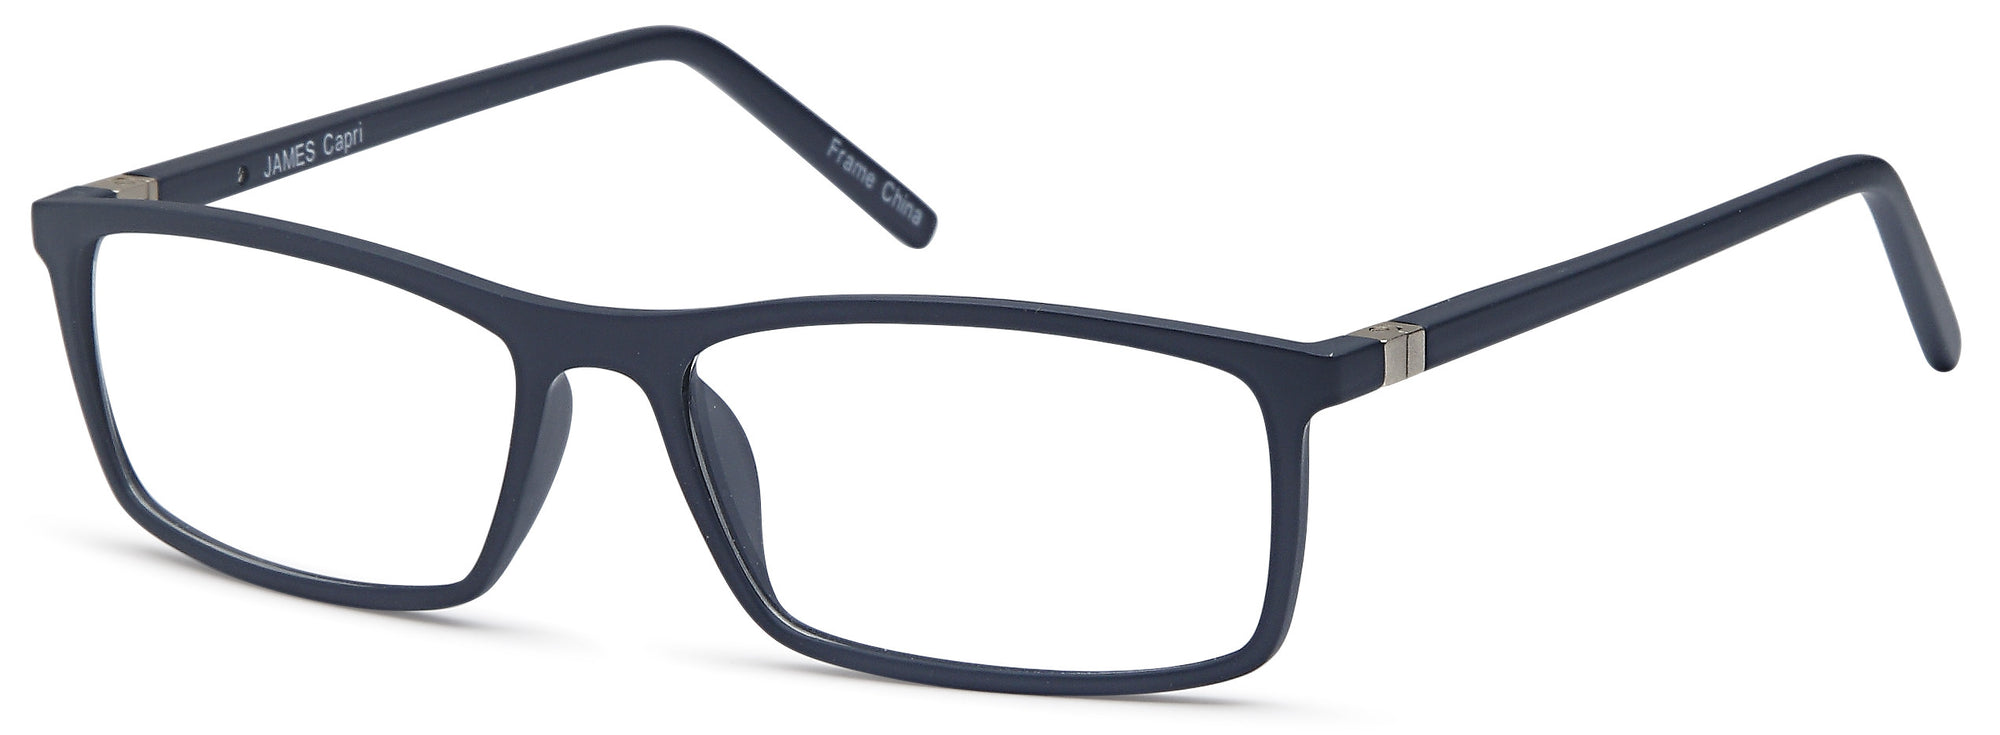 MILLENNIAL Eyeglasses JAMES - Go-Readers.com